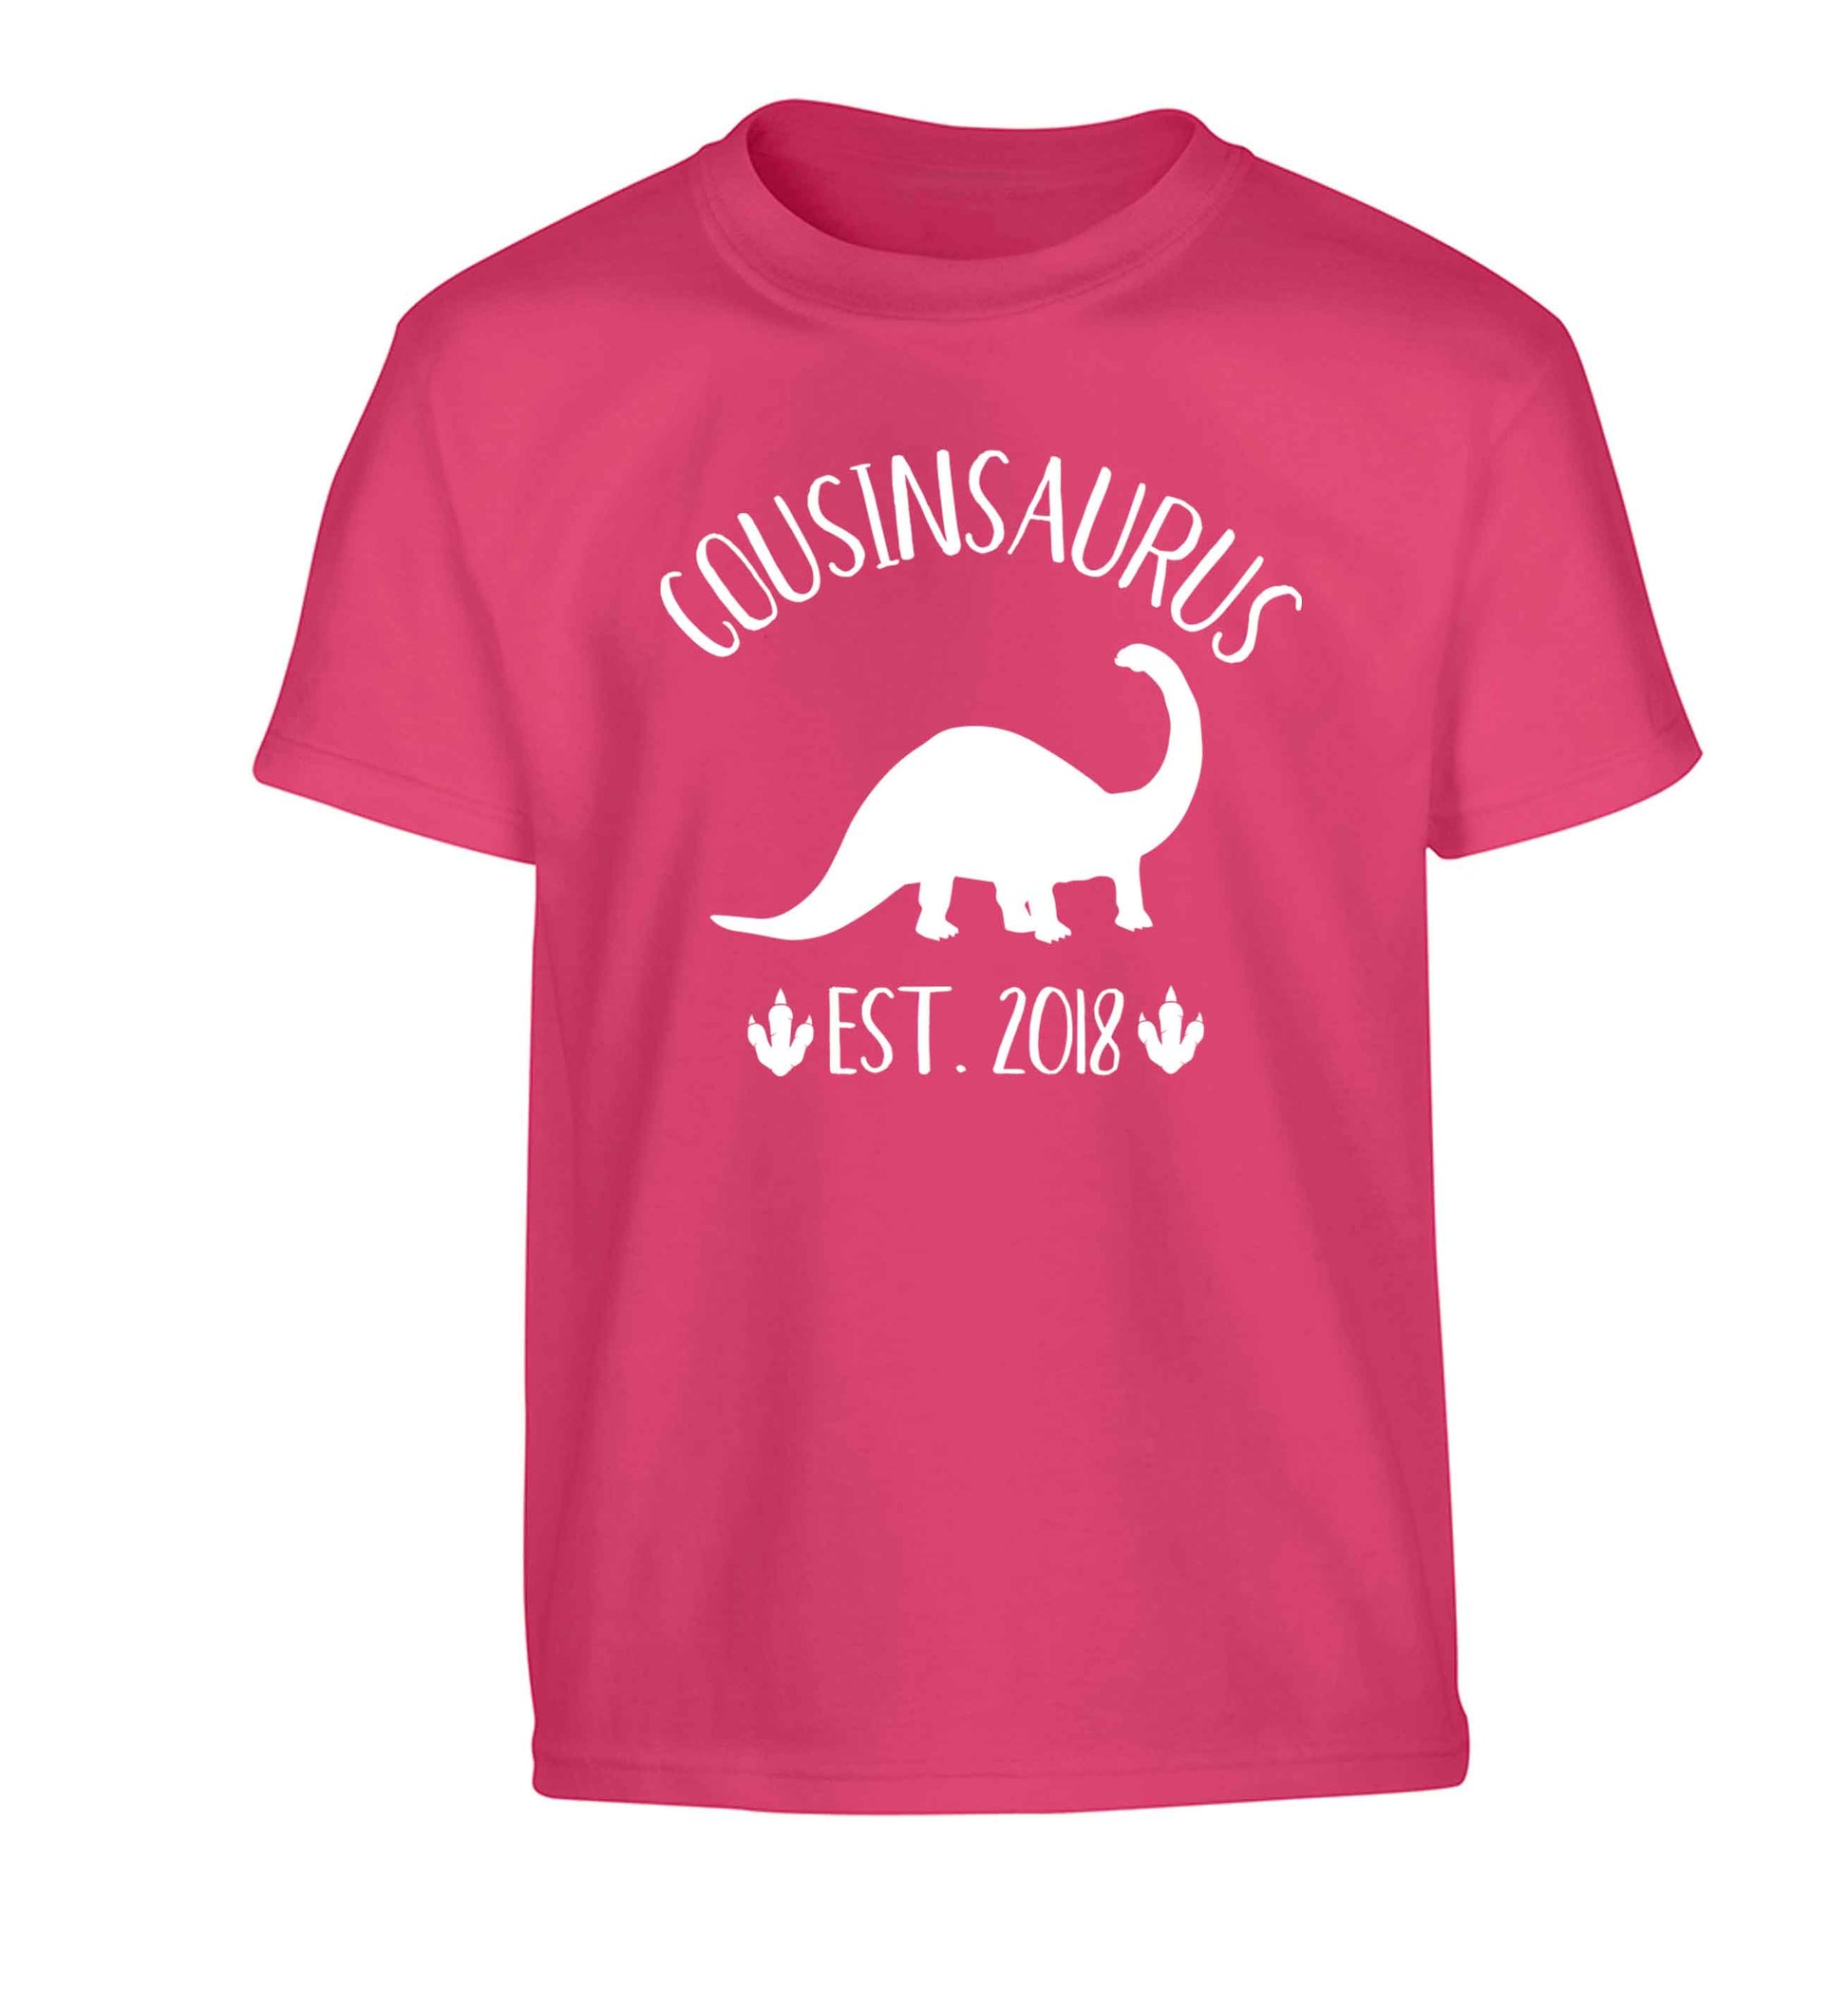 Personalised cousinsaurus since (custom date) Children's pink Tshirt 12-13 Years